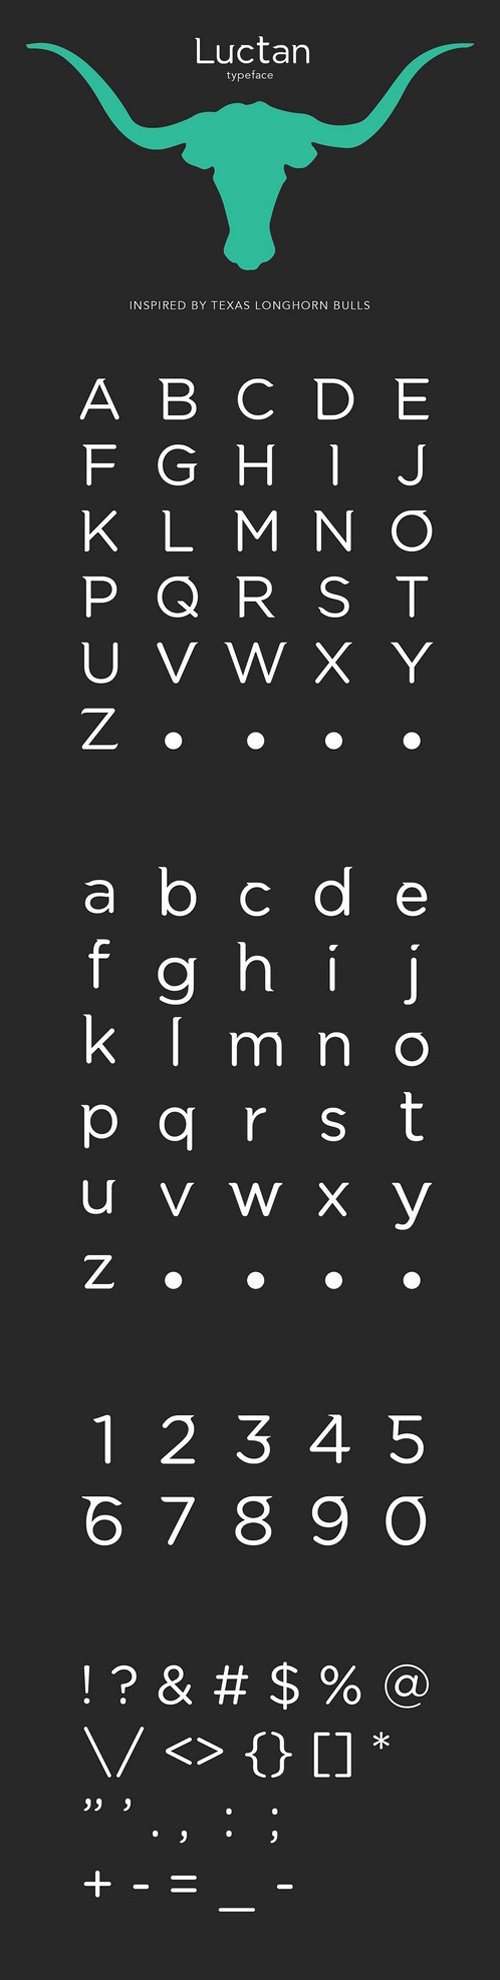 Luctan Typeface Font